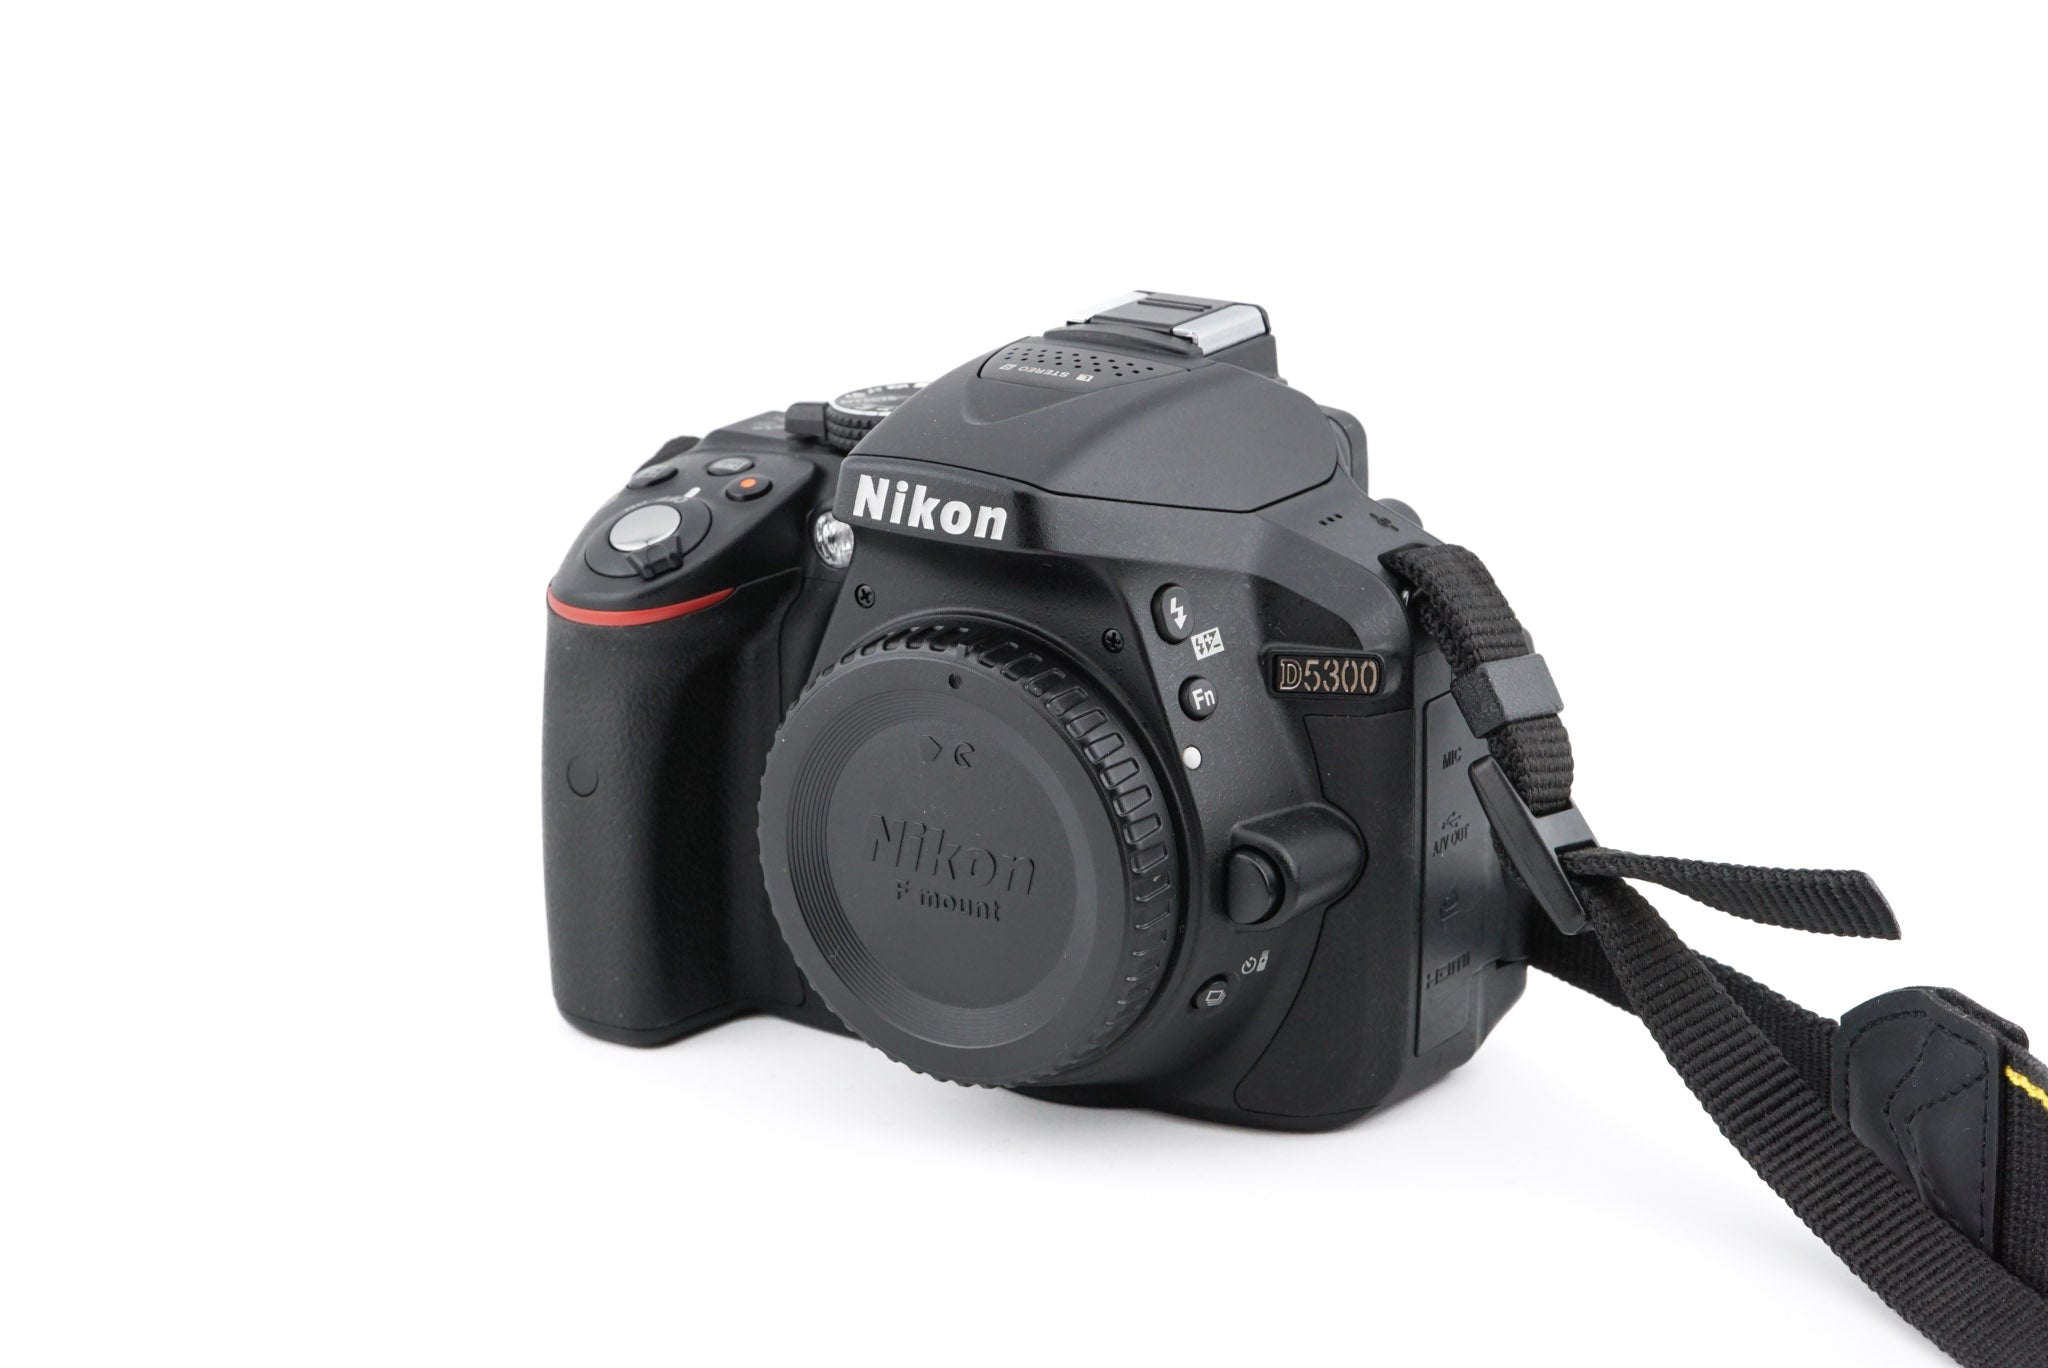 alma Adular Asesor Nikon D5300